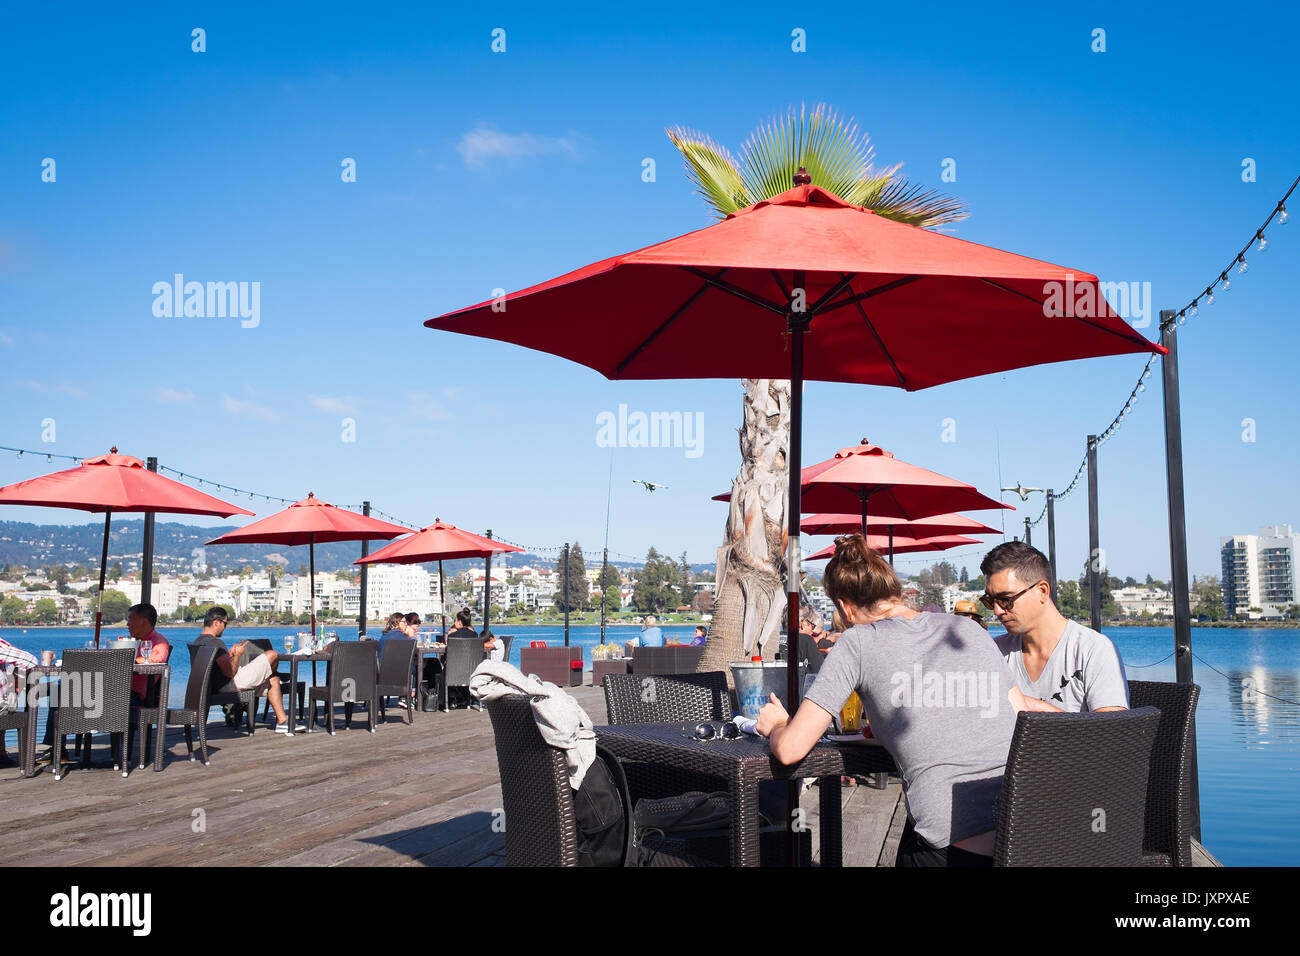 OAKLAND, CA - Agosto 25, 2016: el centro de Lake Merritt restaurante con asientos al aire libre en un muelle de madera. Los comensales disfrutan el brunch de los domingos. Foto de stock